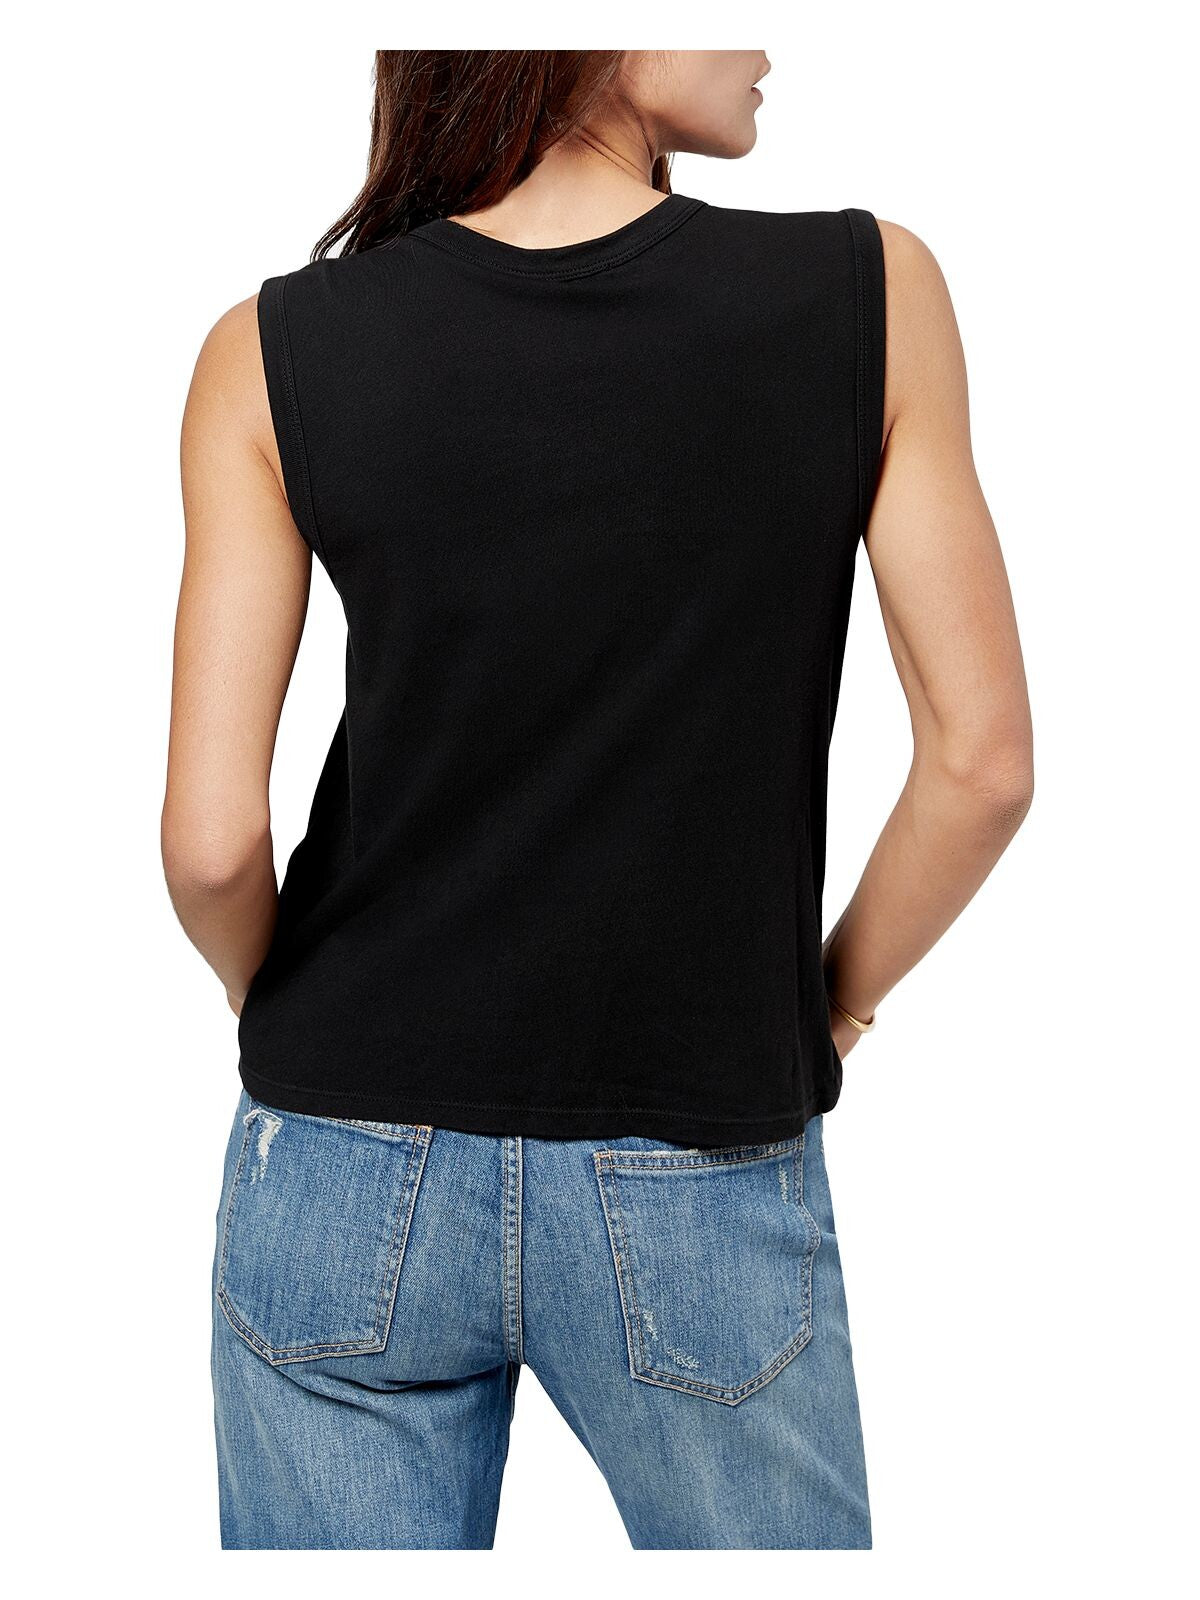 JOIE Womens Black Sleeveless Crew Neck T-Shirt XS